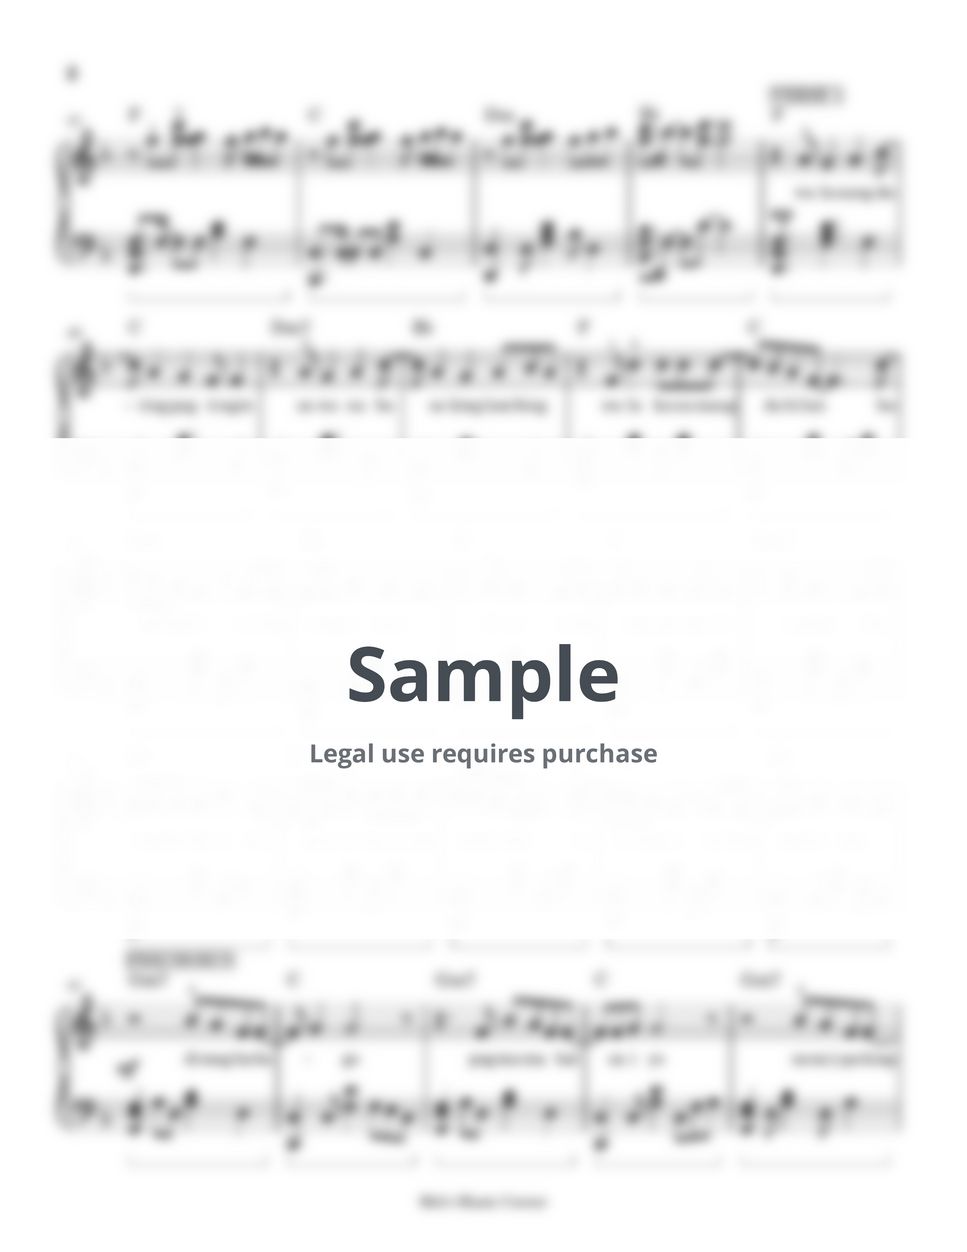 Lily - Magbalik 2.0 (piano sheet music) by Mel's Music Corner